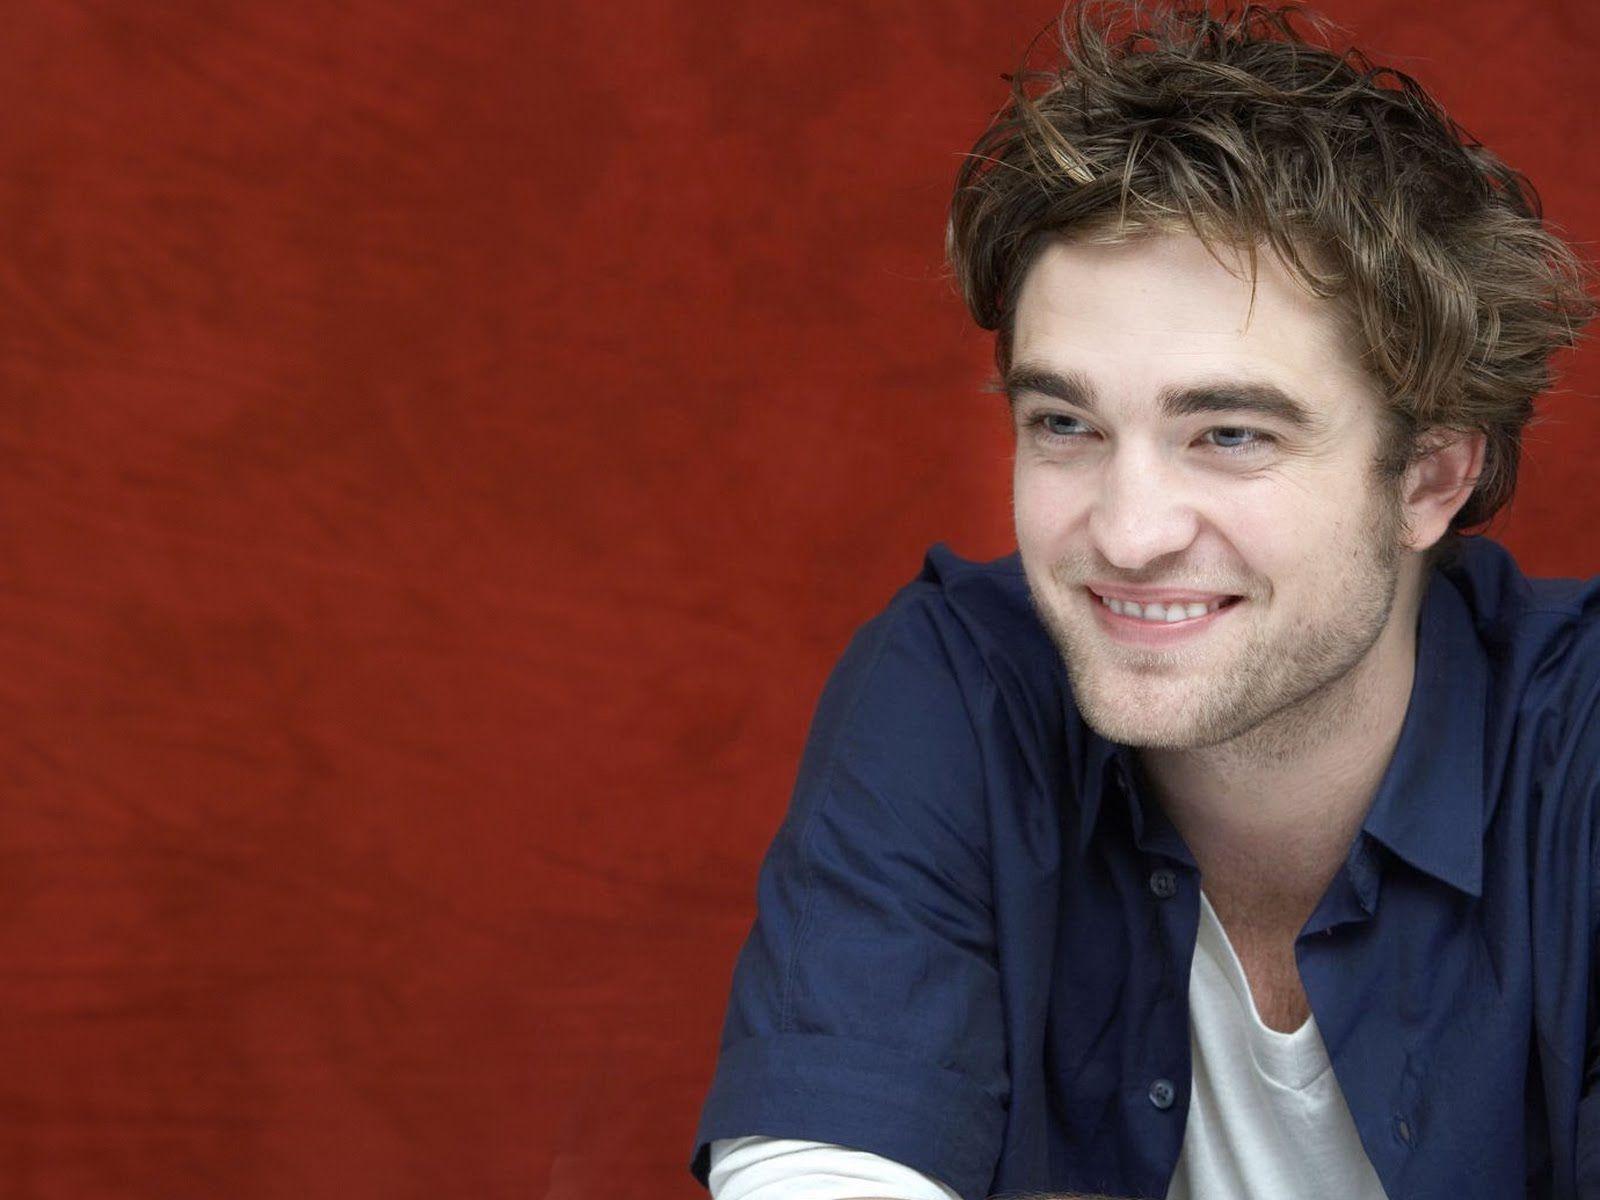 Robert Pattinson & Kristen Stewart Wallpaper: Robert Pattinson